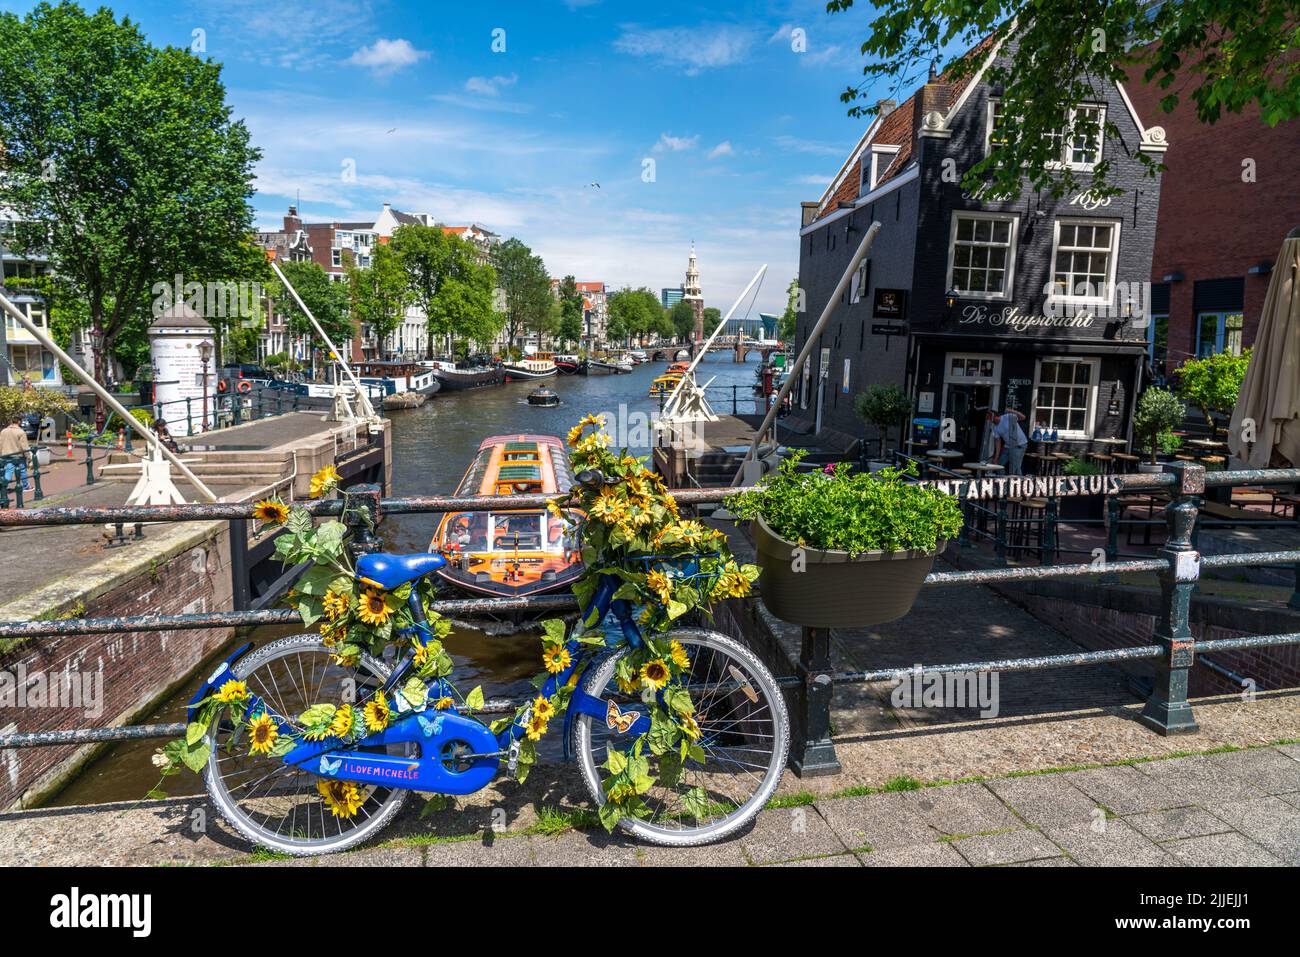 Sint Antoniesluis, auf dem Oudeschans-Kanal, Fahrrad mit Sonnenblumen geschmückt, Grachtenrundfahrt, Café, De Sluyswacht, Amsterdam, Niederlande Stockfoto